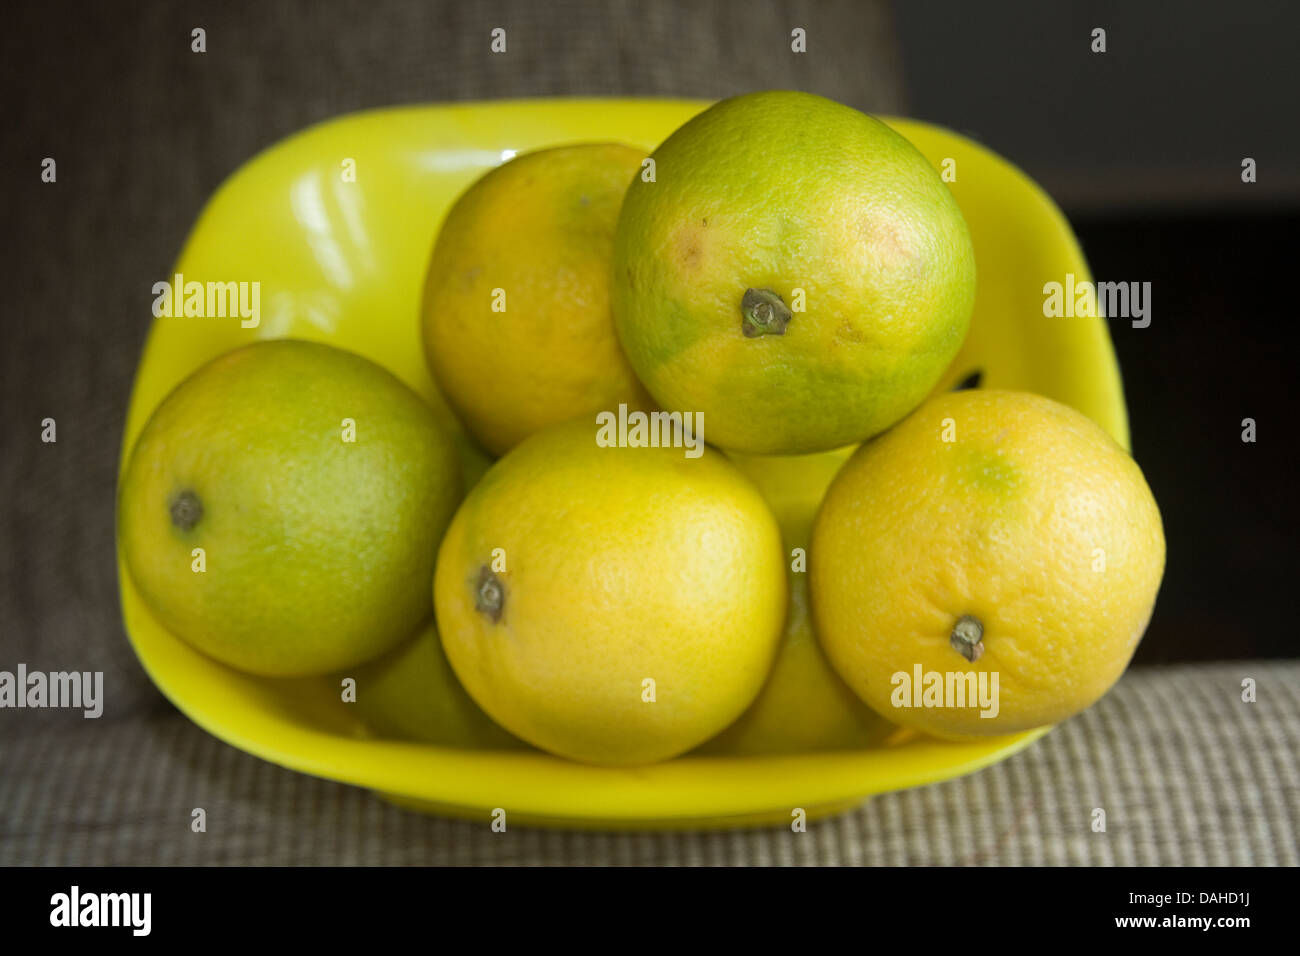 Citrons jaune verdâtre et sweet placés dans le bac en plastique jaune Banque D'Images